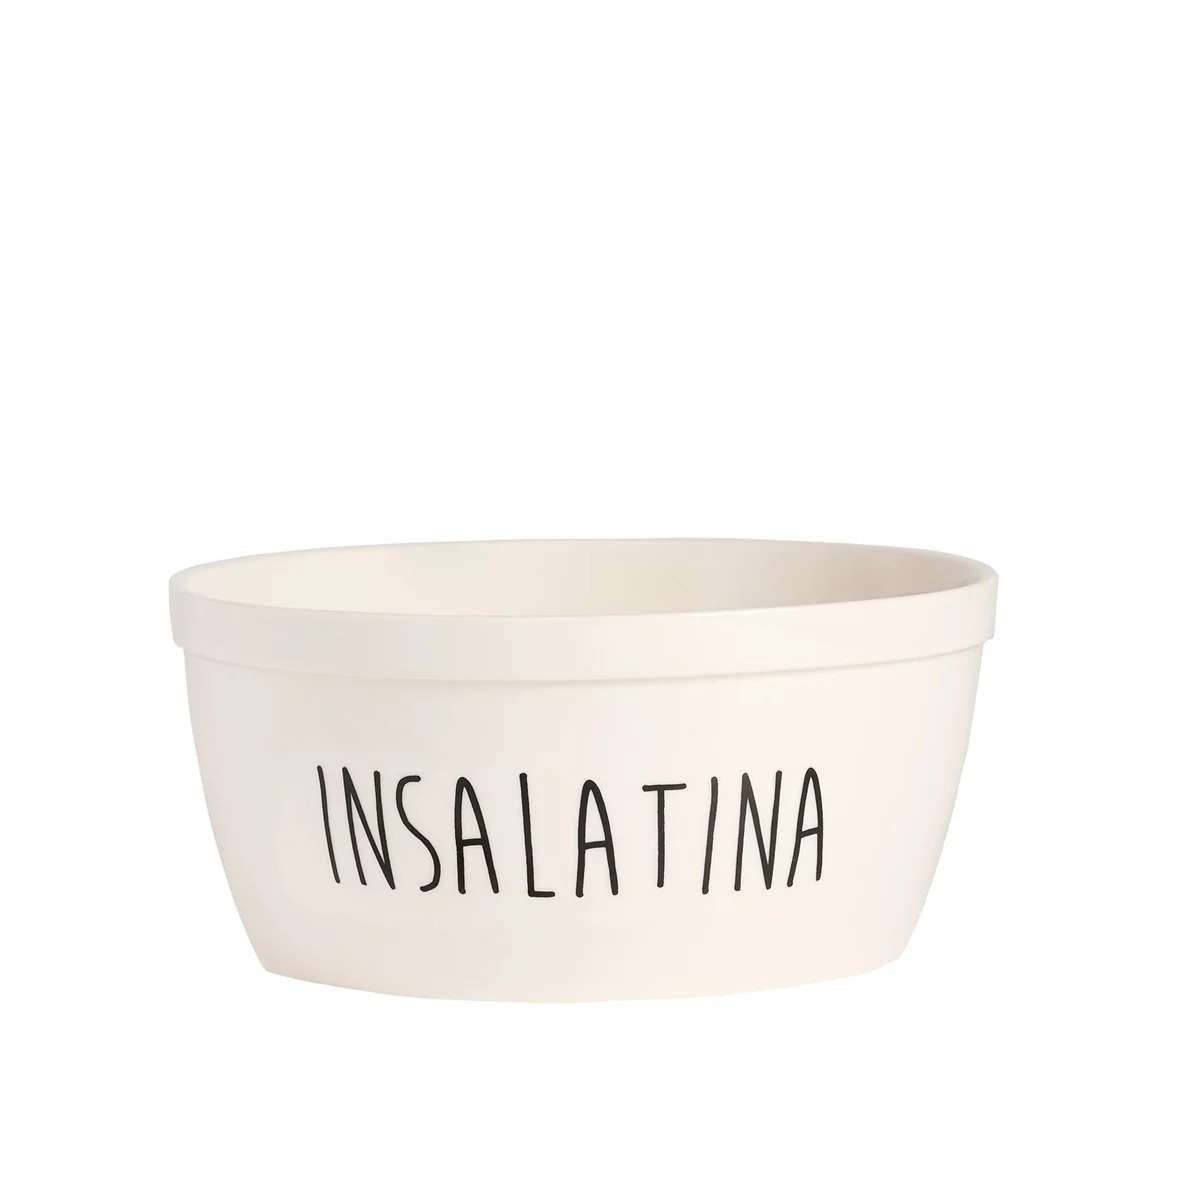 Immagine del prodotto Insalatiera in Ceramica Insalatina ø20 cm x h 9,5 cm | Simple Day